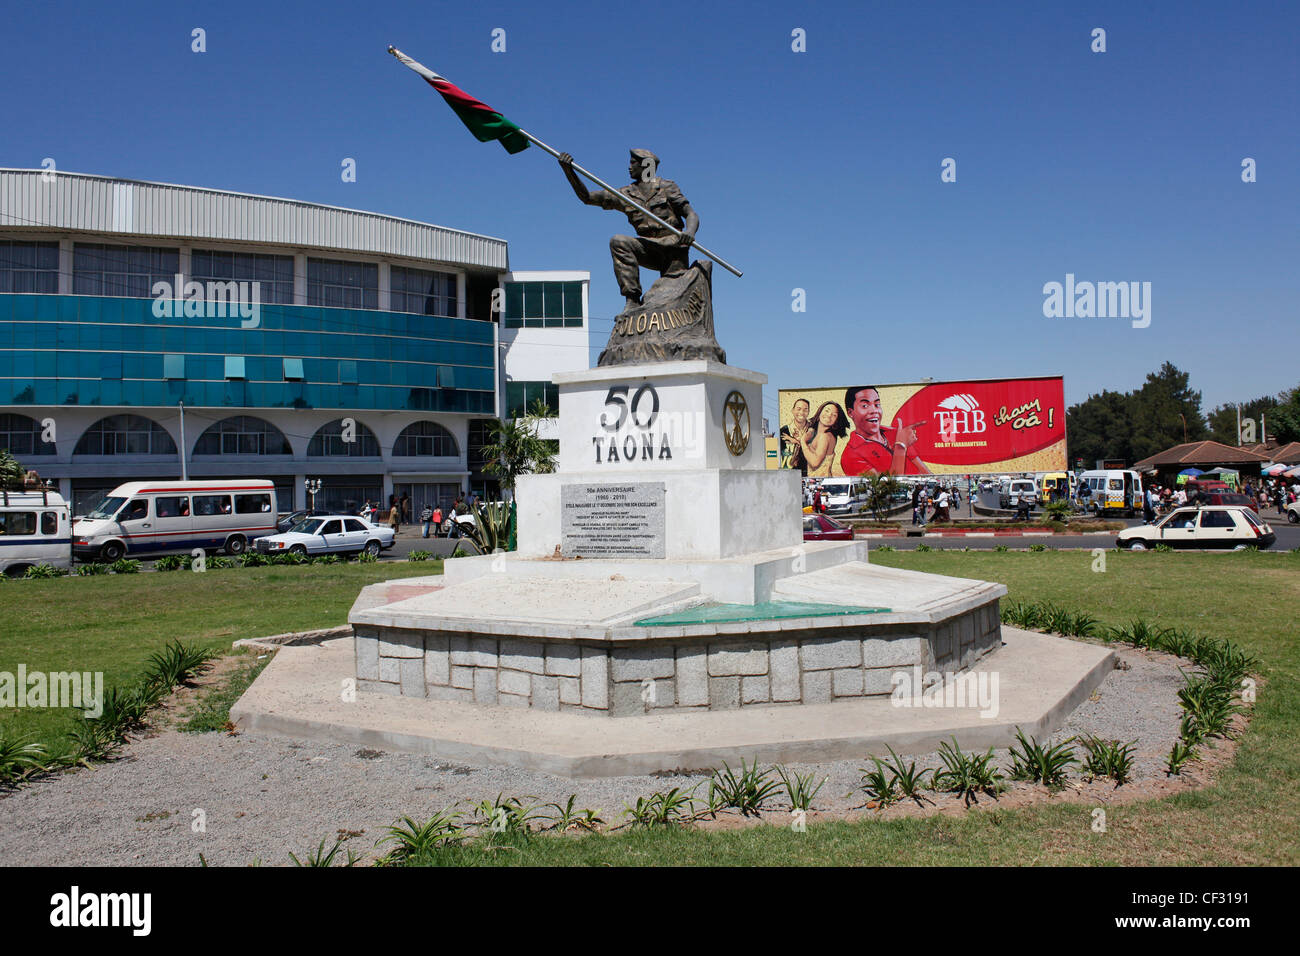 Statue dans le centre-ville pour célébrer 50 ans de l'indépendance 1960 - 2010. 50 Taona , Antananarivo. Madagascar. Banque D'Images